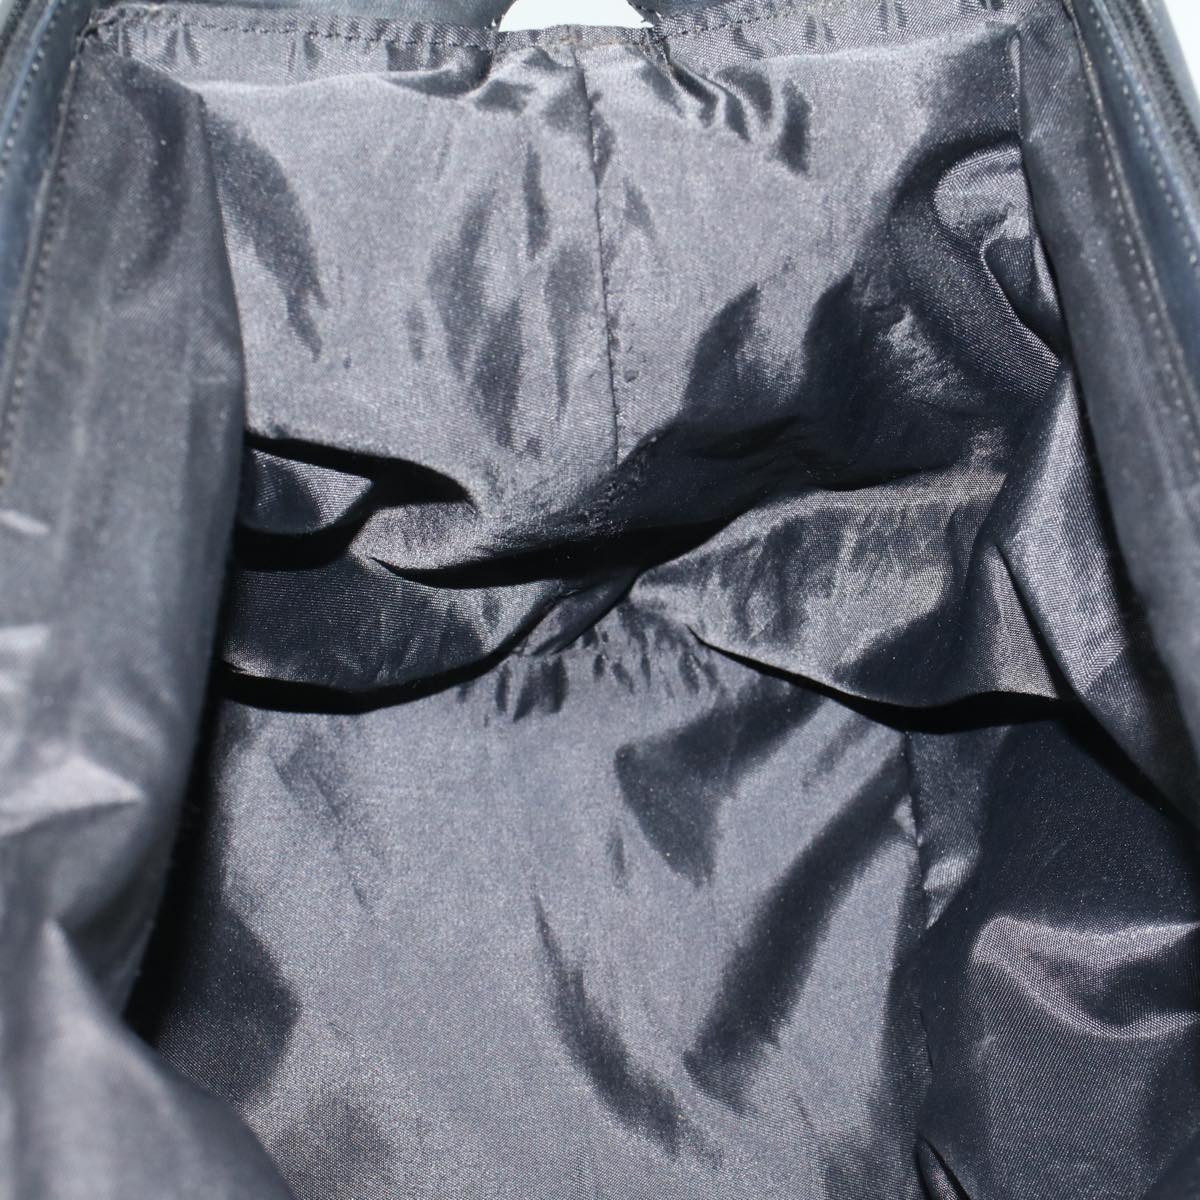 CELINE Shoulder Bag Nylon Black Auth bs6872